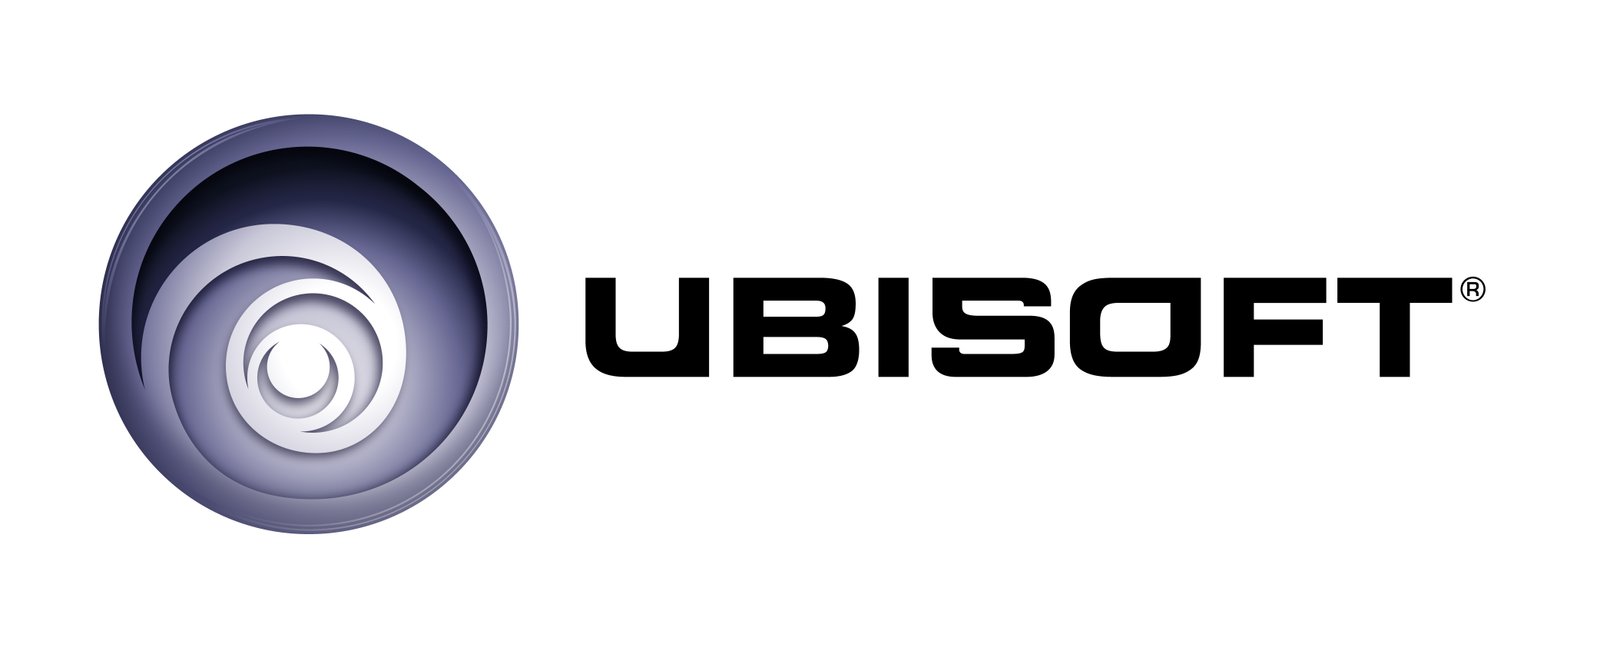 [A venir] Ubisoft prépare la sortie de 3 nouveaux jeux iOS  1